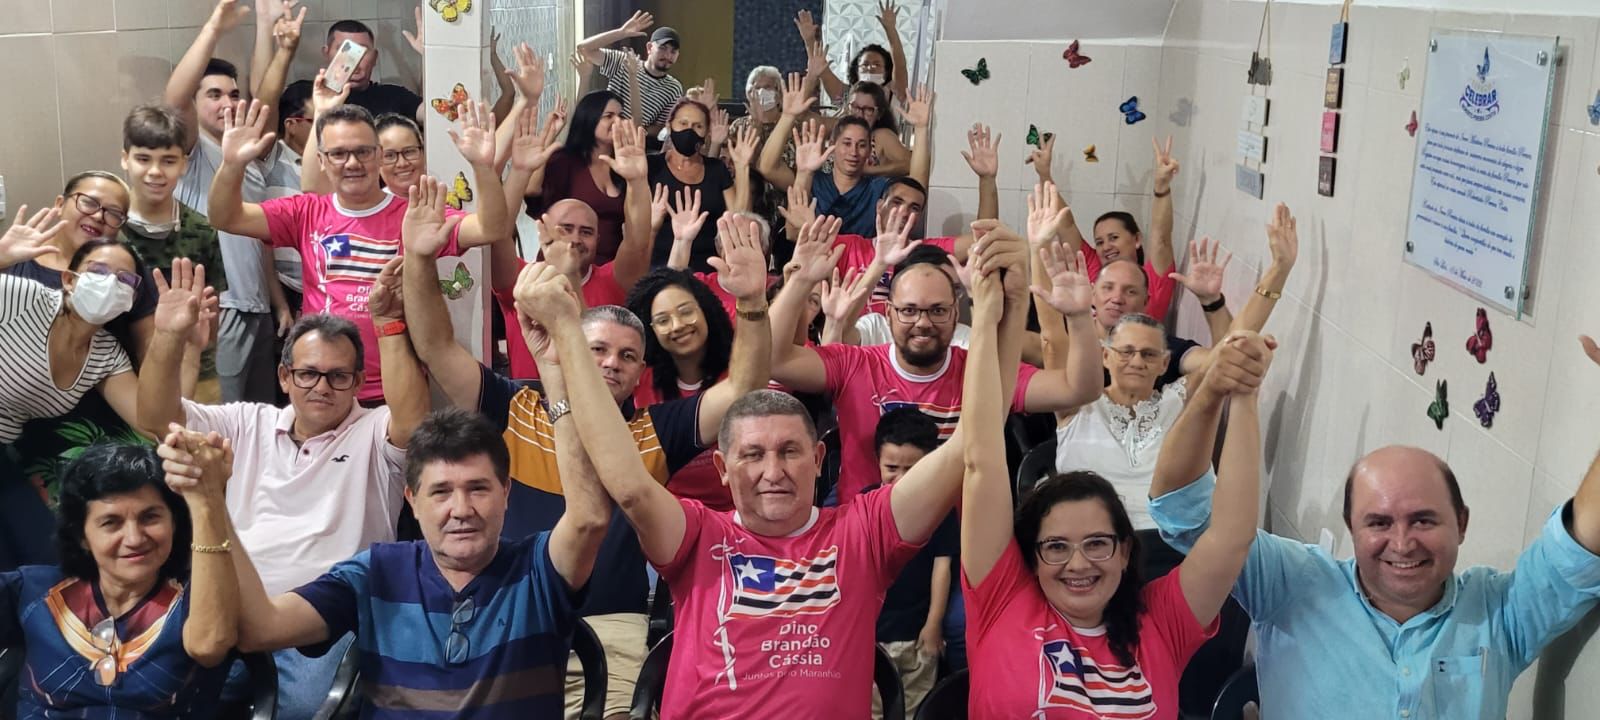 Professora Cássia reúne com lideranças e recebe apoio no Lira em São Luís